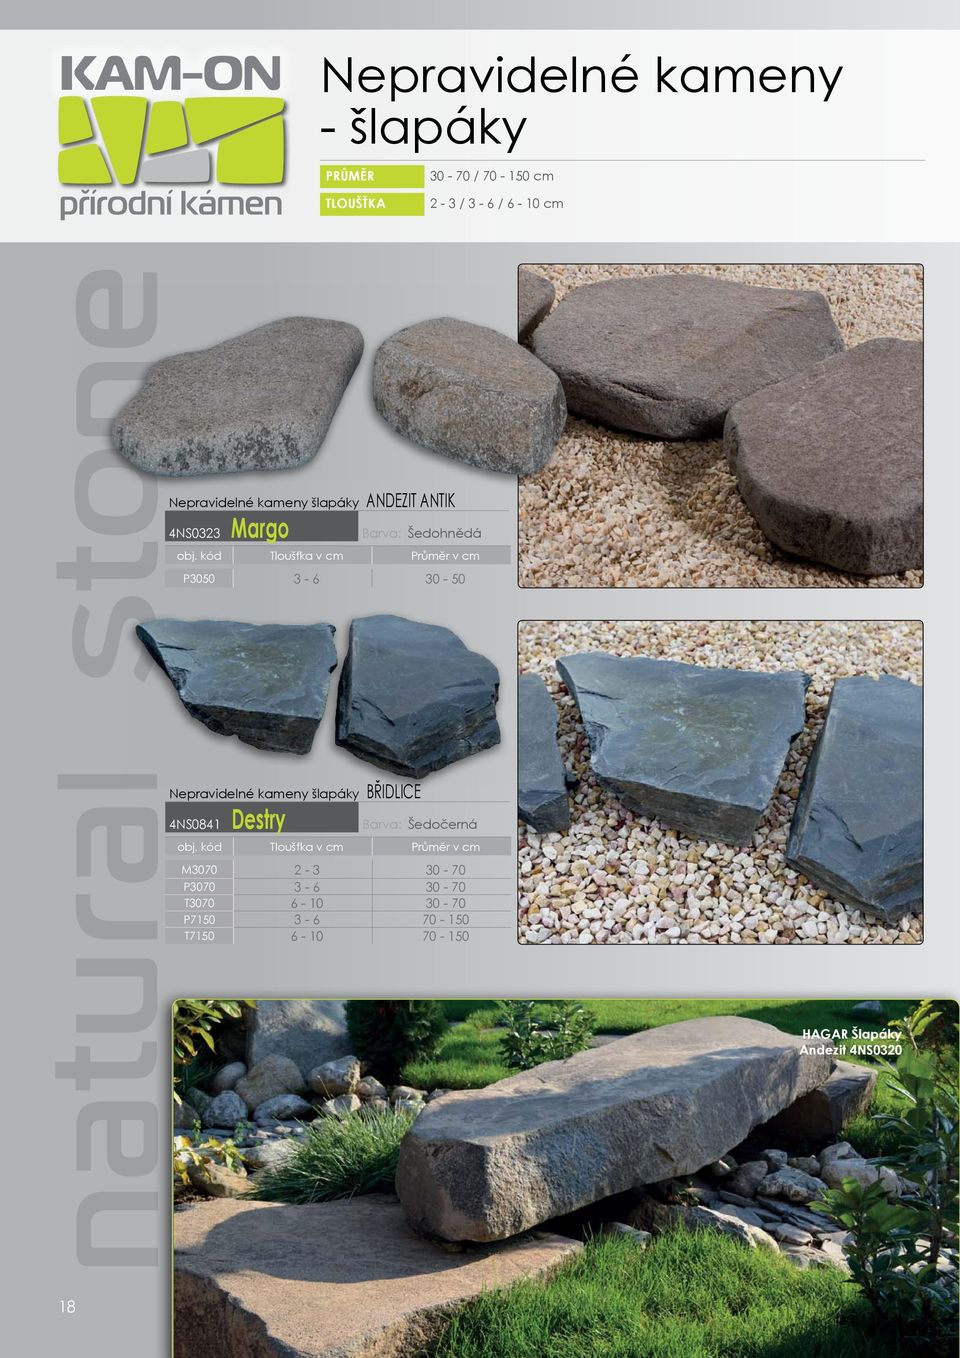 Nepravidelné kameny šlapáky BŘIDLICE 4NS0841 Destry Barva: Šedočerná M3070 2-3 30-70